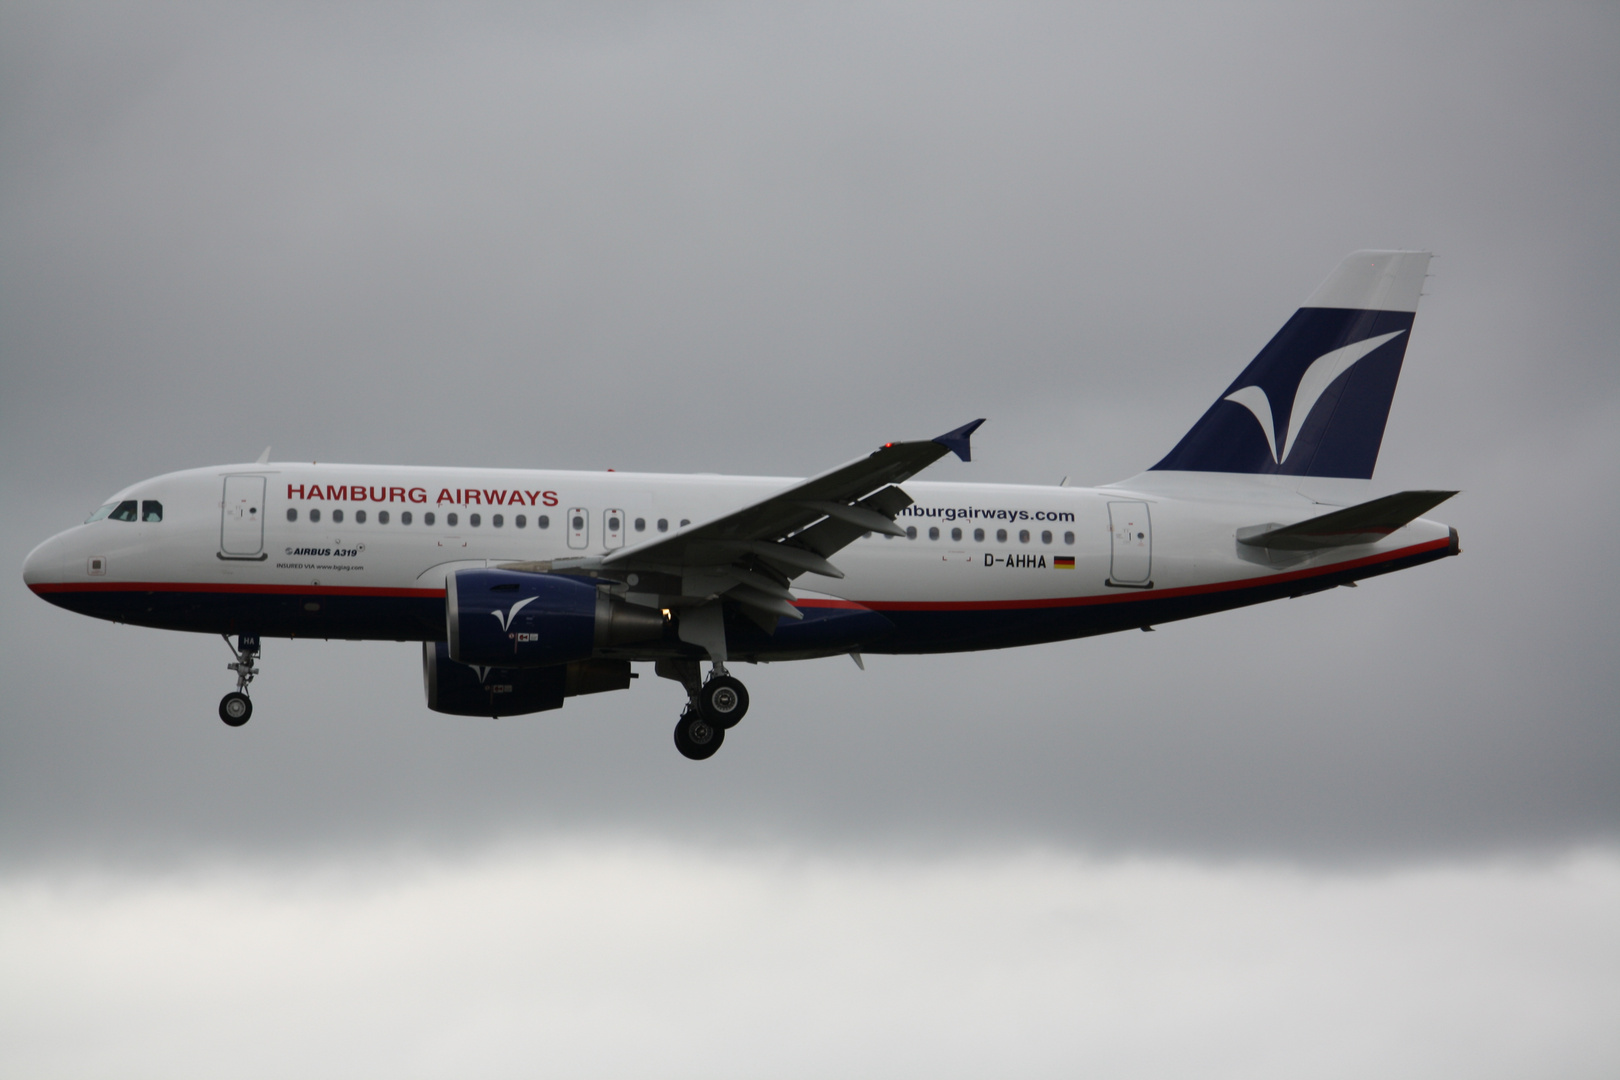 Airbus A319 Reg:D-AHHA von Hamburg-Airways im Endanflug auf HAM